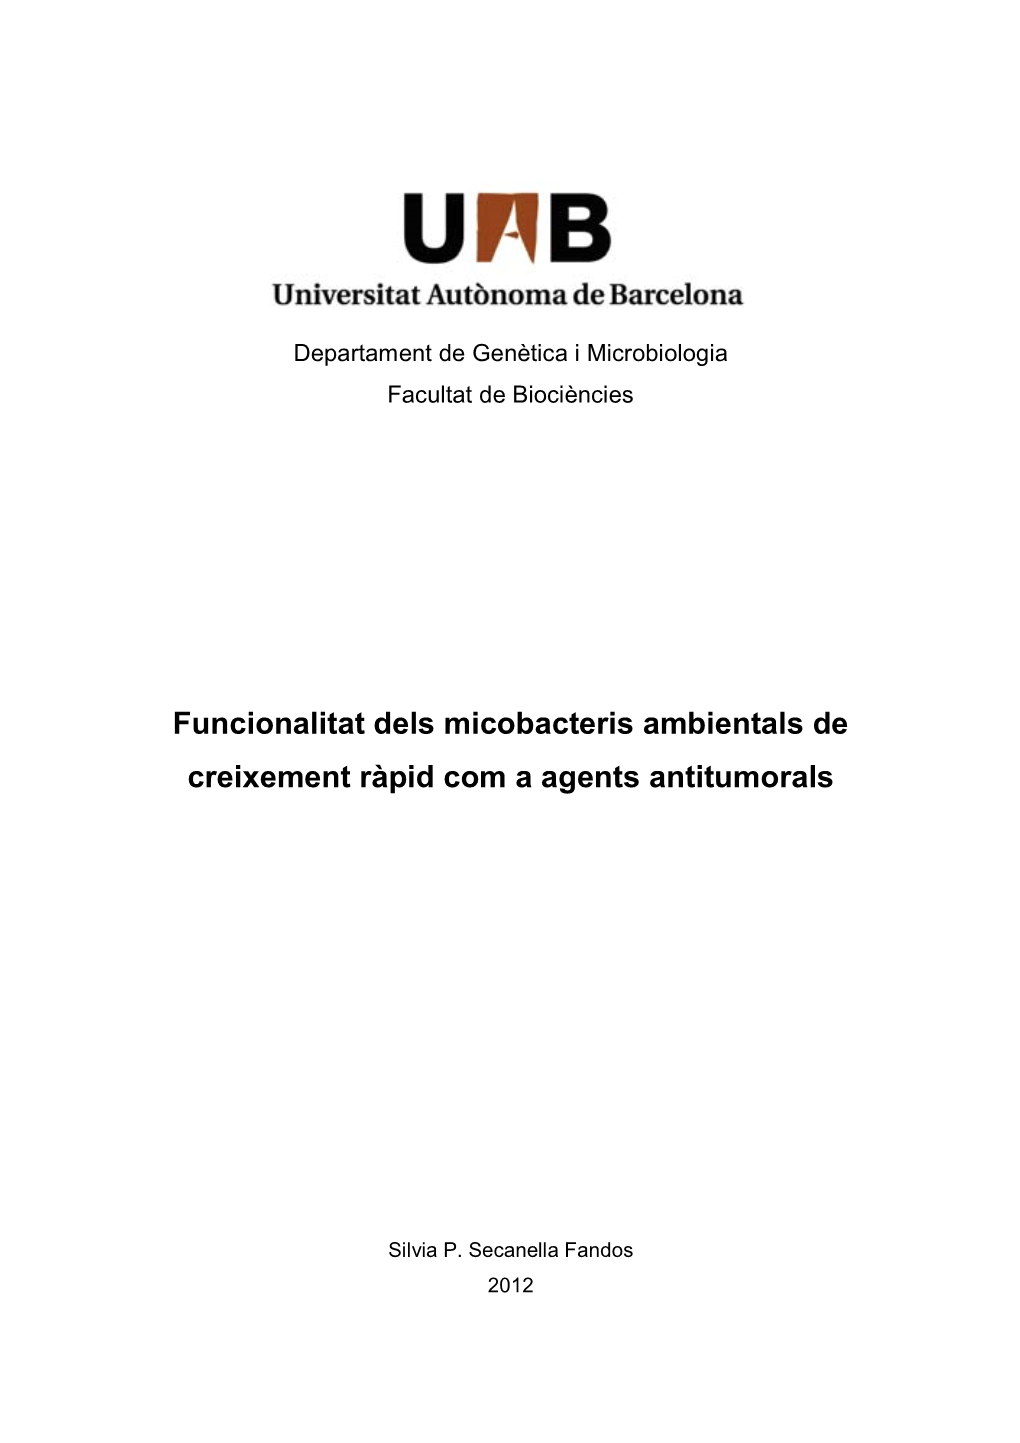 Funcionalitat Dels Micobacteris Ambientals De Creixement Ràpid Com a Agents Antitumorals